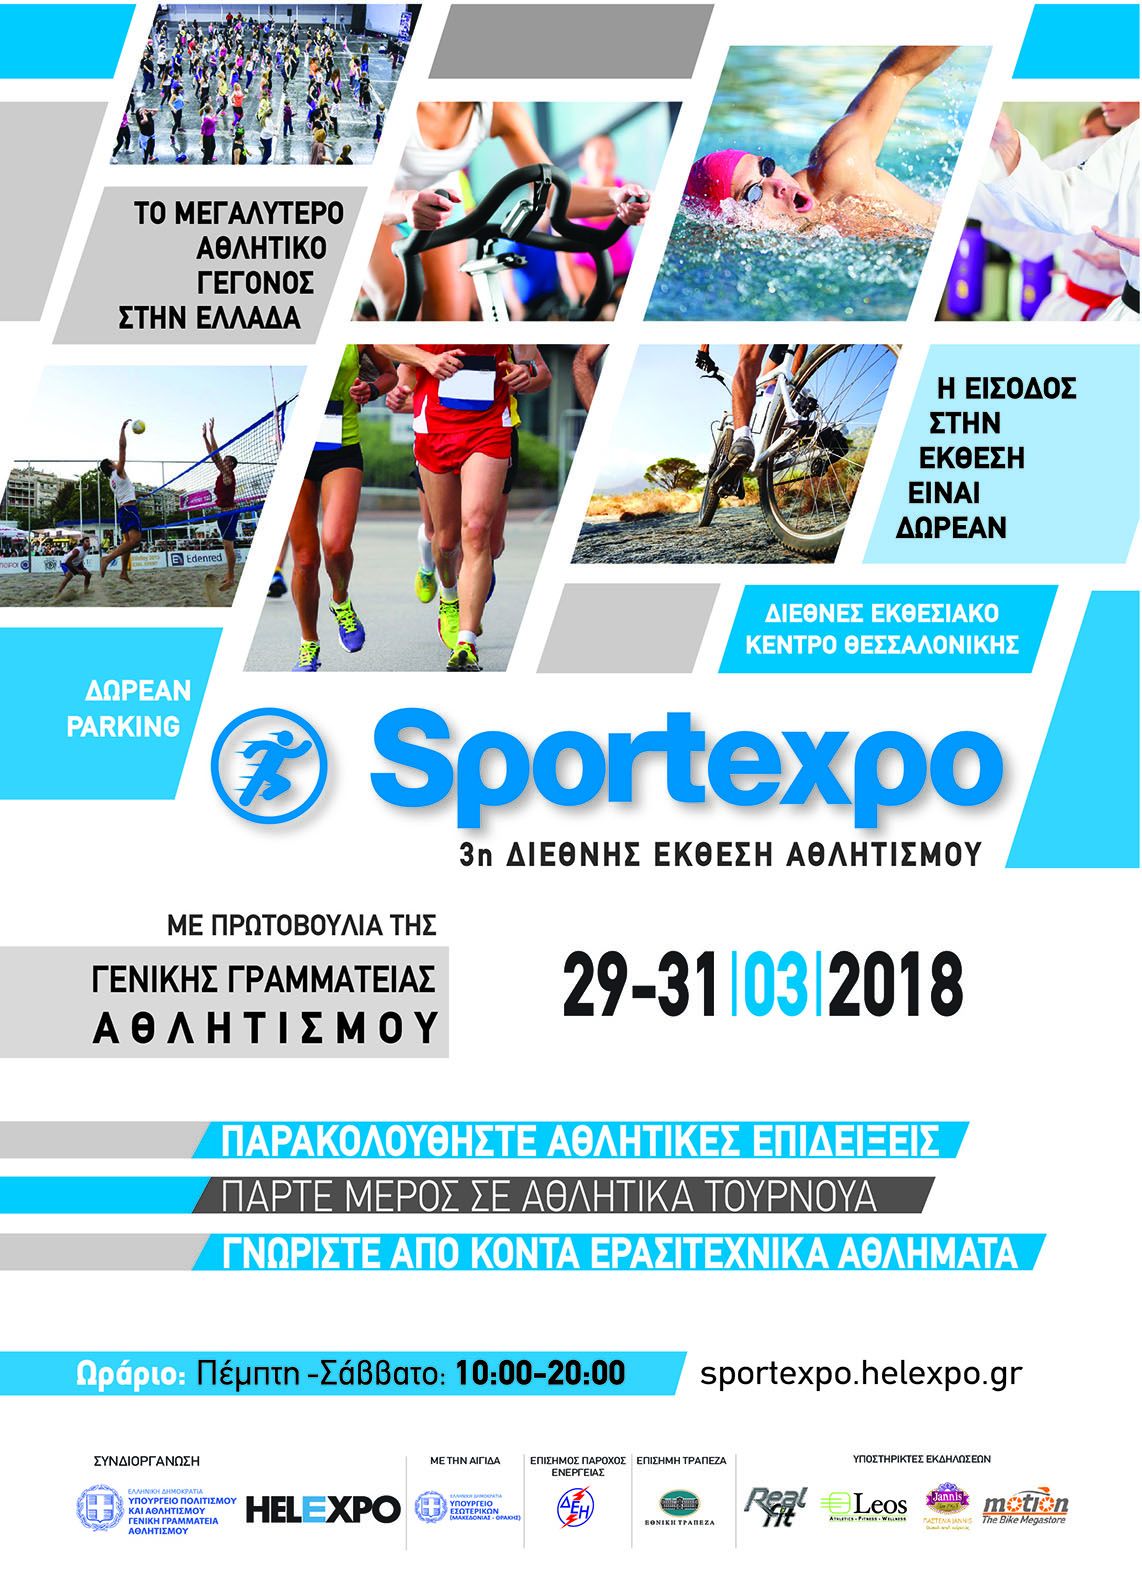 Sportexpo